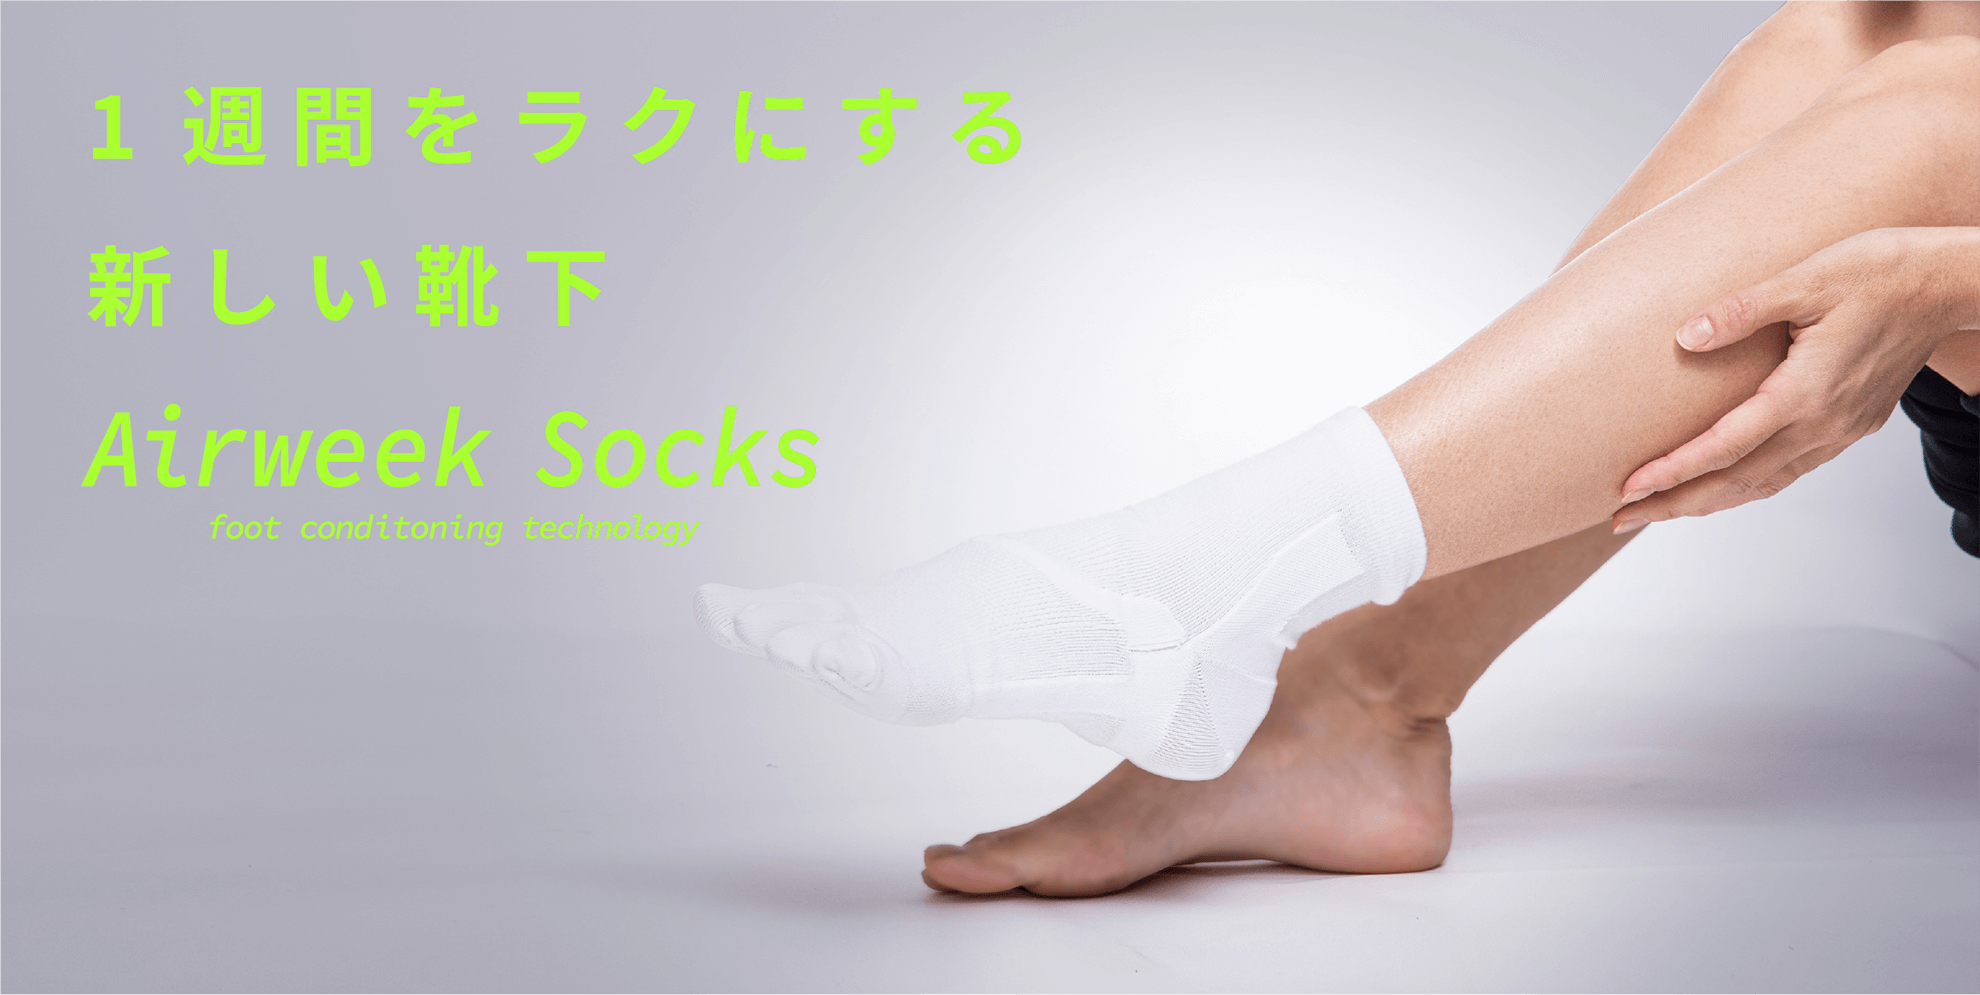 1週間をラクにする新しい靴下　Airweek Socks